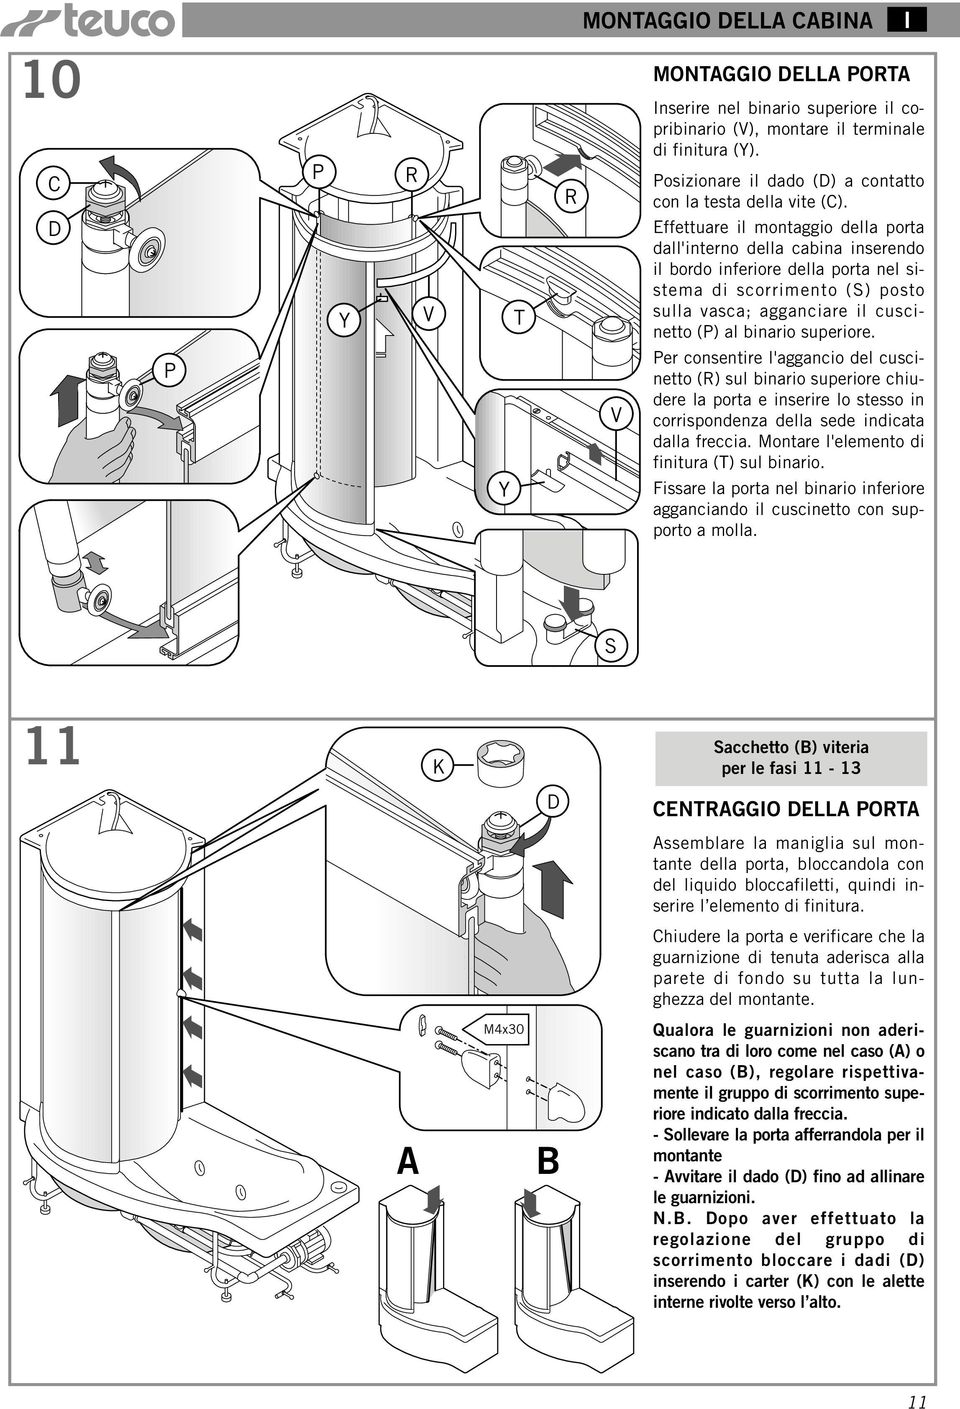 Effettuare il montaggio della porta dall'interno della cabina inserendo il bordo inferiore della porta nel sistema di scorrimento (S) posto sulla vasca; agganciare il cuscinetto (P) al binario